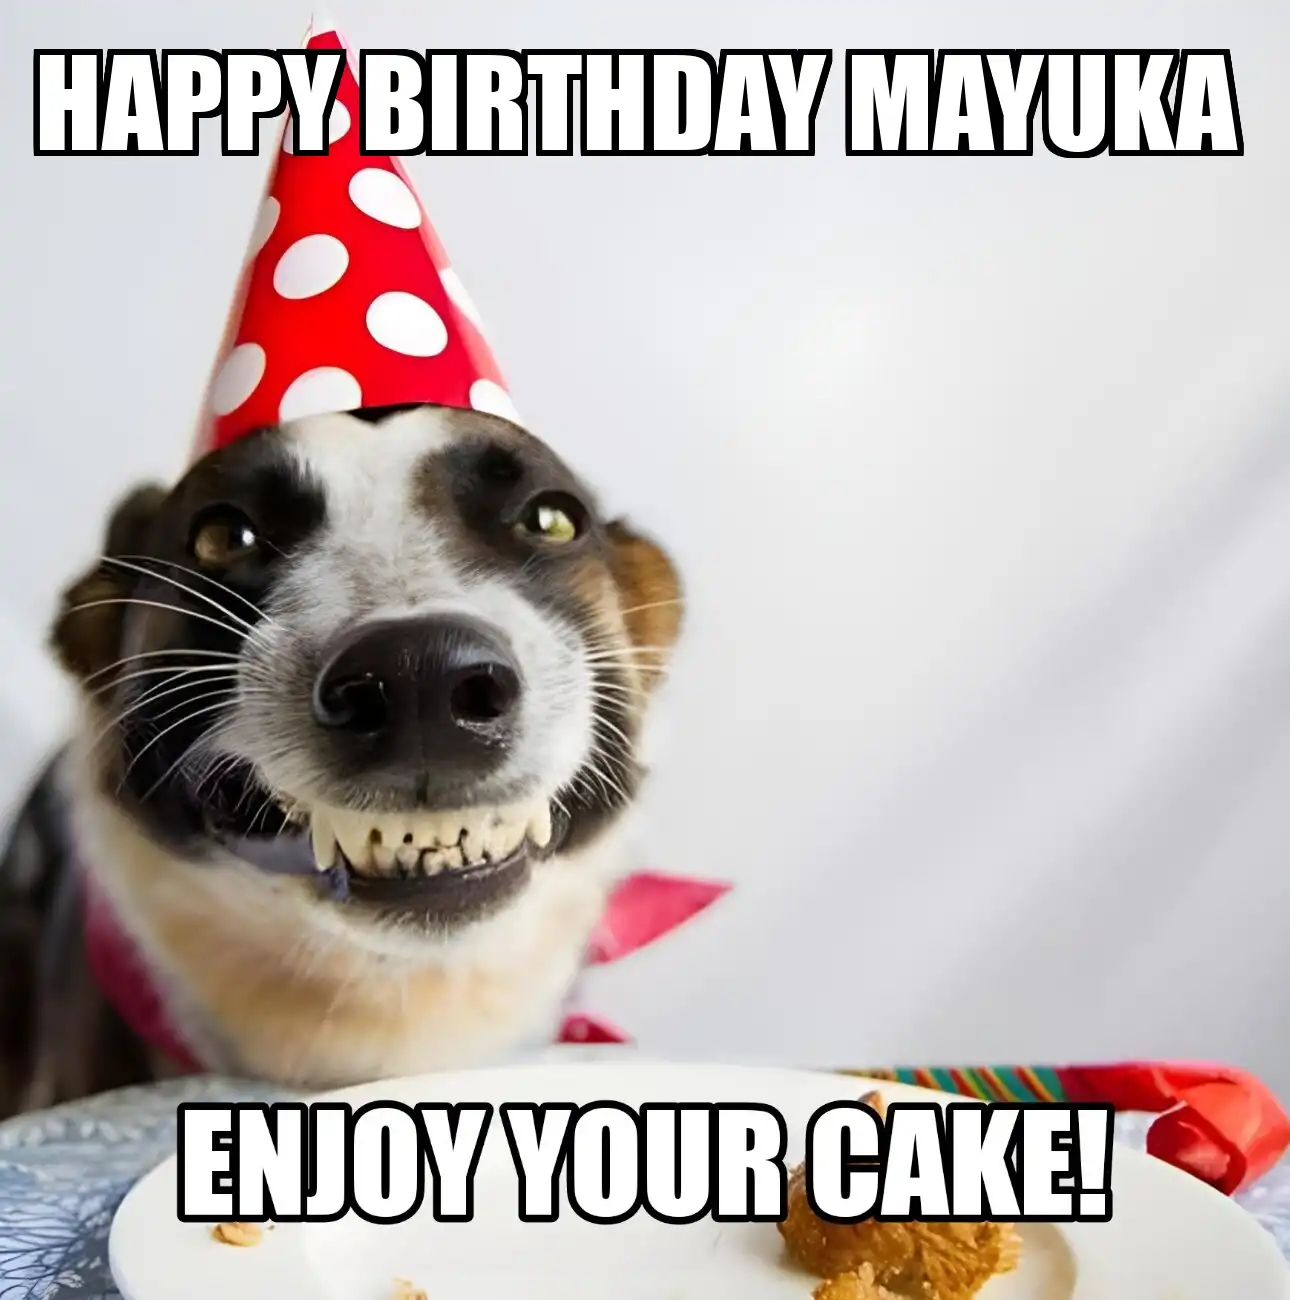 Happy Birthday Mayuka Enjoy Your Cake Dog Meme